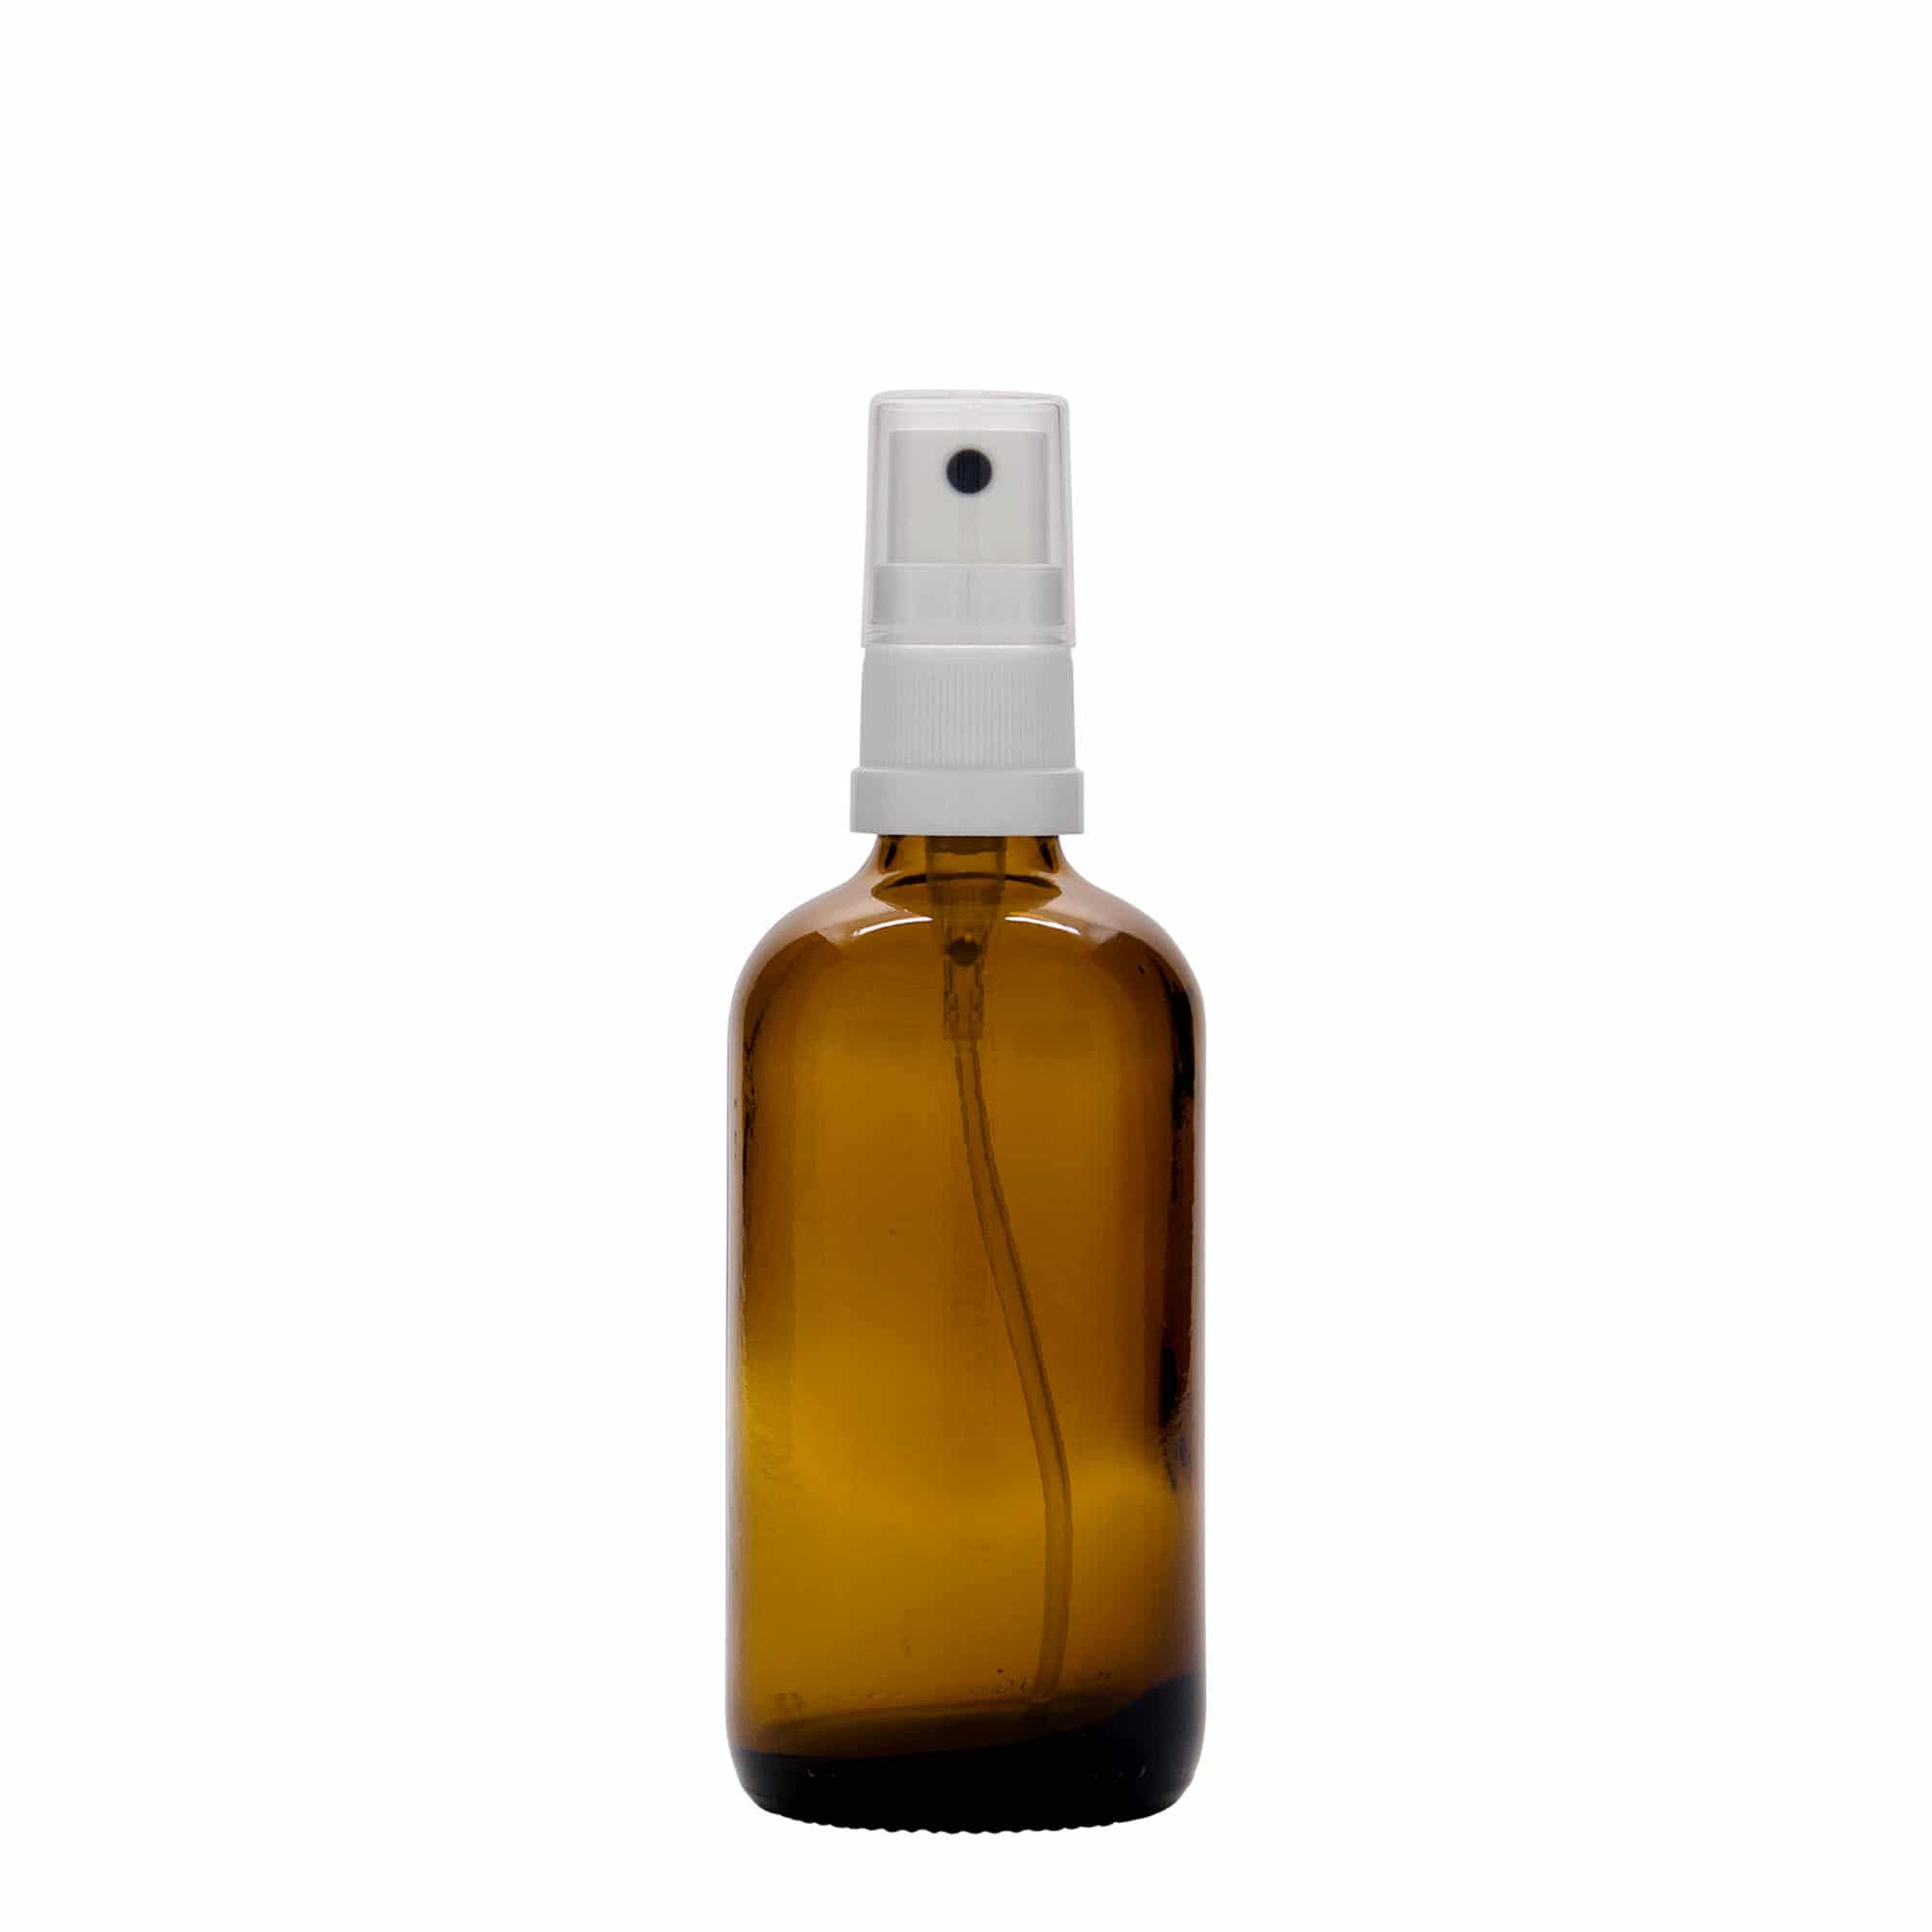 100 ml medicine spray bottle, glass, brown, closure: DIN 18